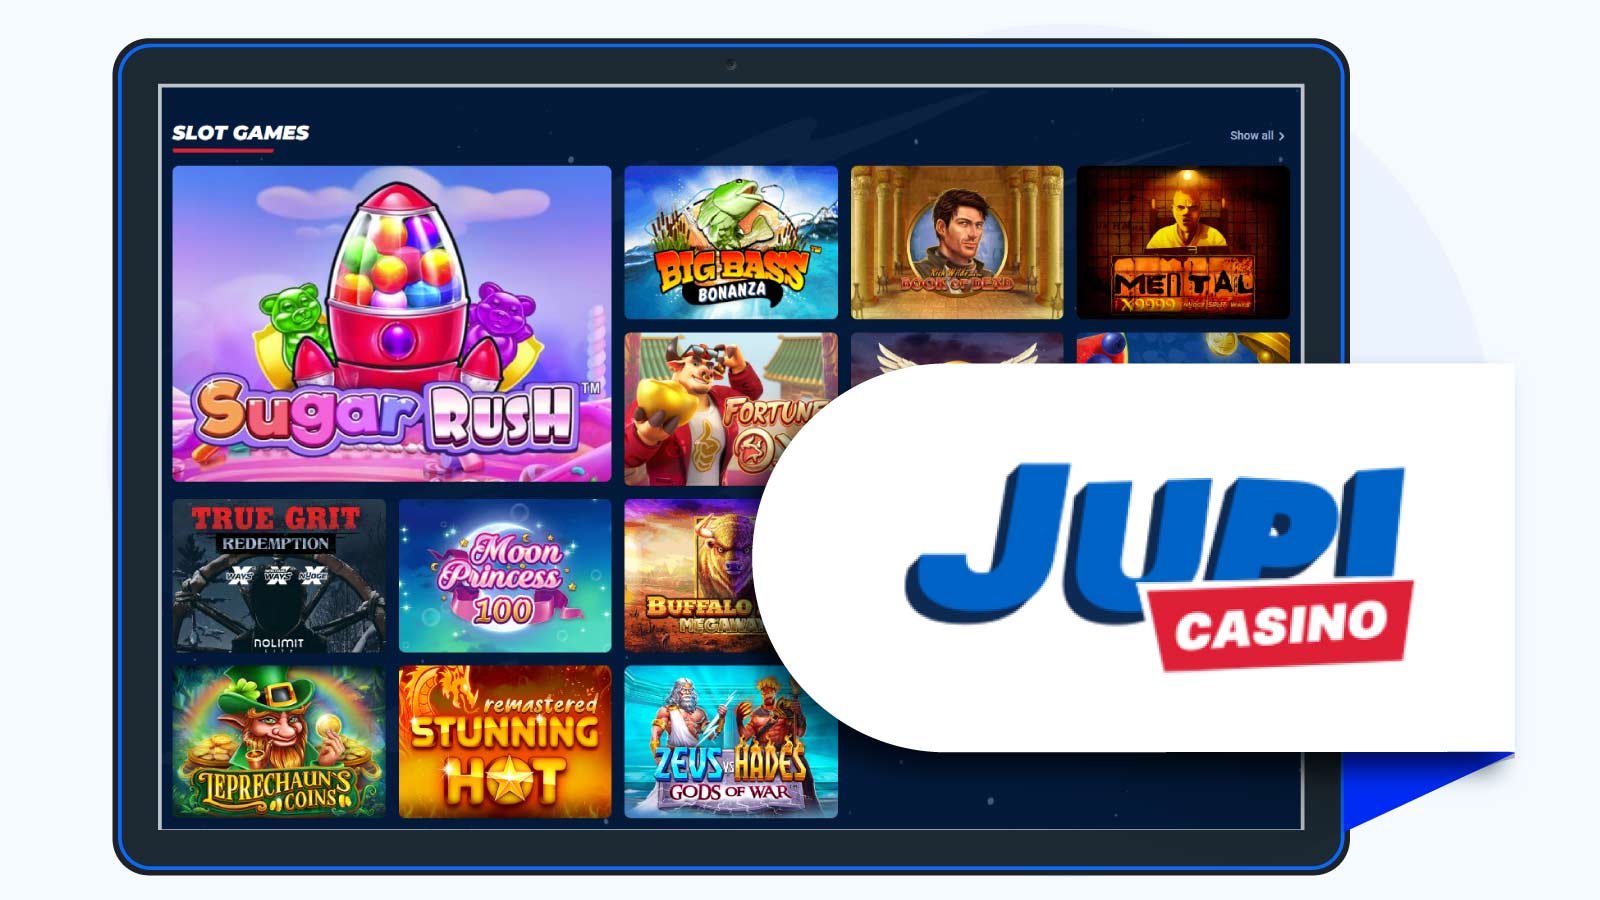 Jupi Casino Top Casino Site for Live Dealer Games